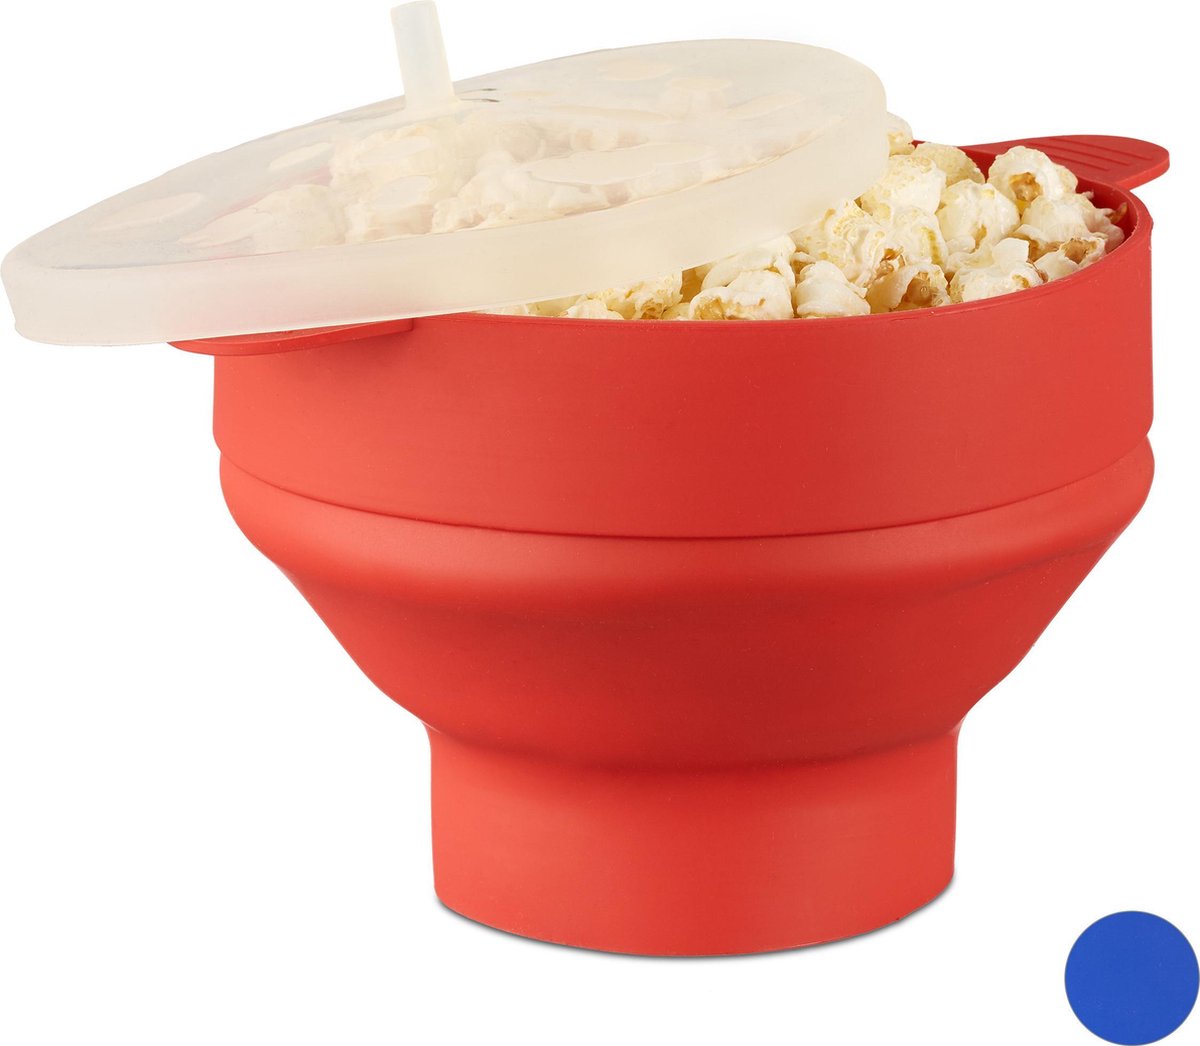 Relaxdays 1x popcorn maker siliconen rood voor magnetron zonder olie opvouwbaar